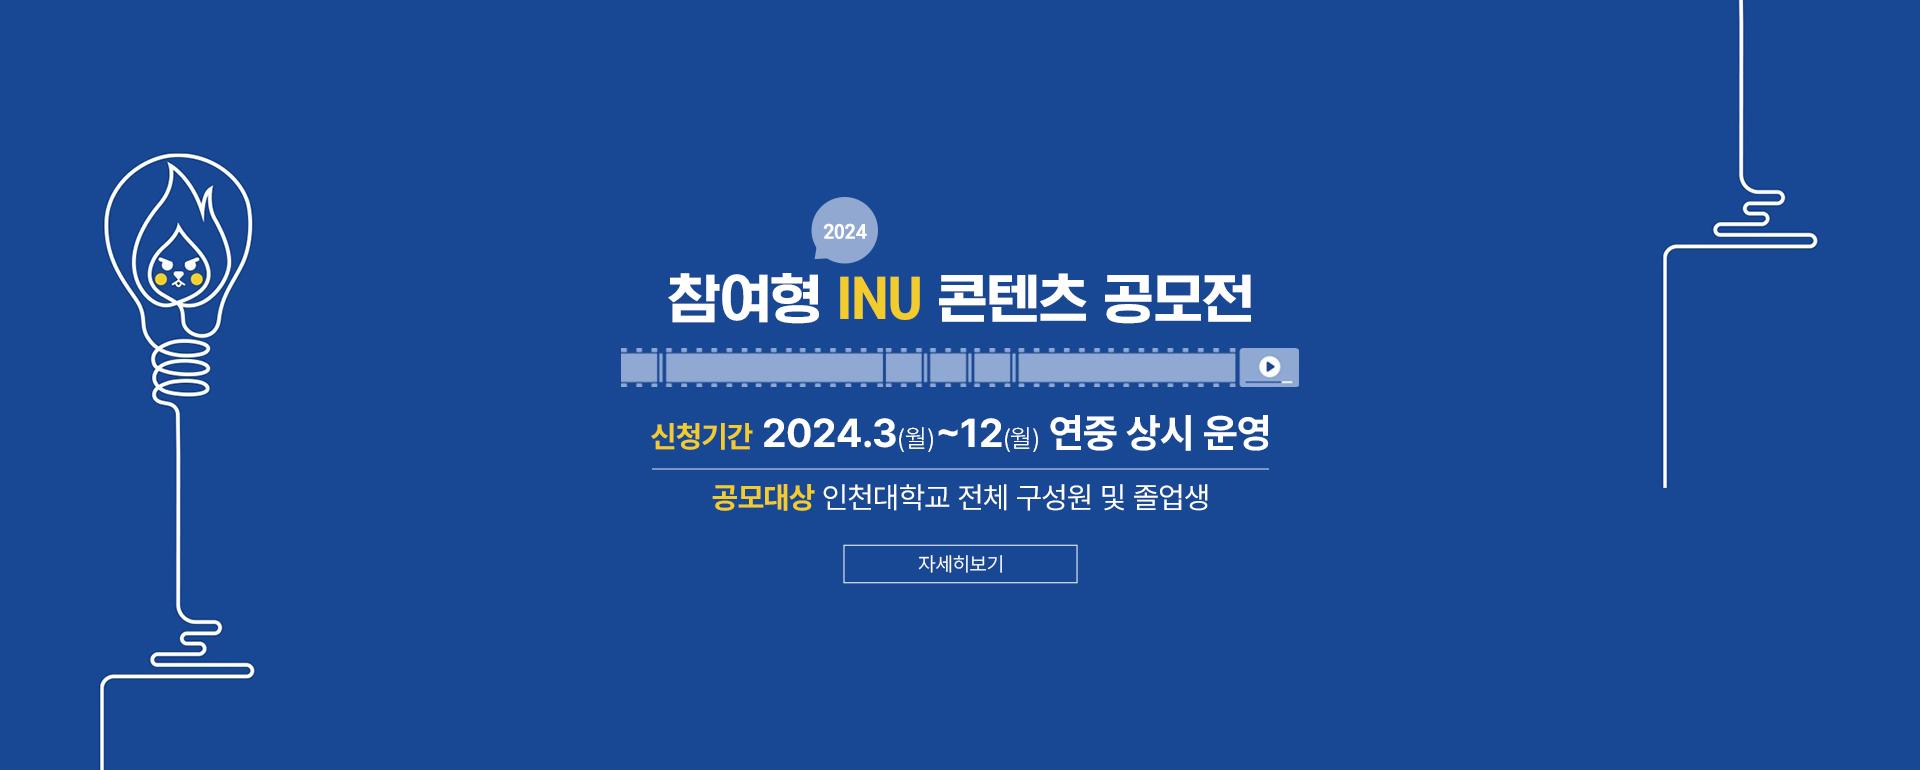 2024 참여형 INU 콘텐츠 공모전, 신청기간: 2024.3(월)~12(월) 연중 상시 운영, 공모대상: 인천대학교 전체 구성원 및 졸업생, 자세히보기